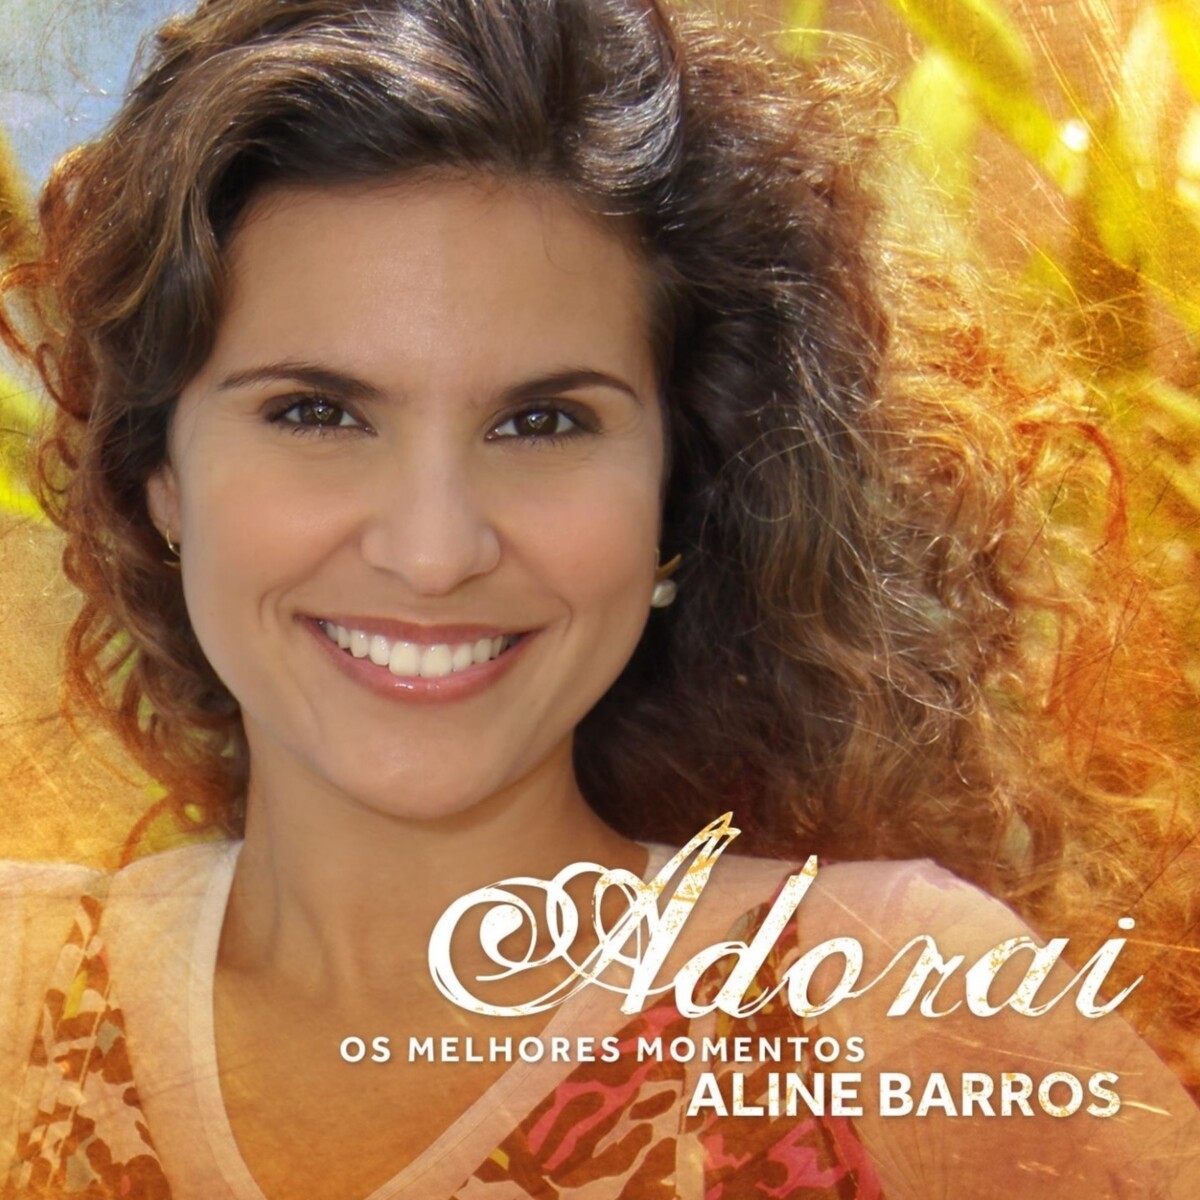 Download Aline Barros - Adorai (Os Melhores Momentos) [Mp3] via Torrent